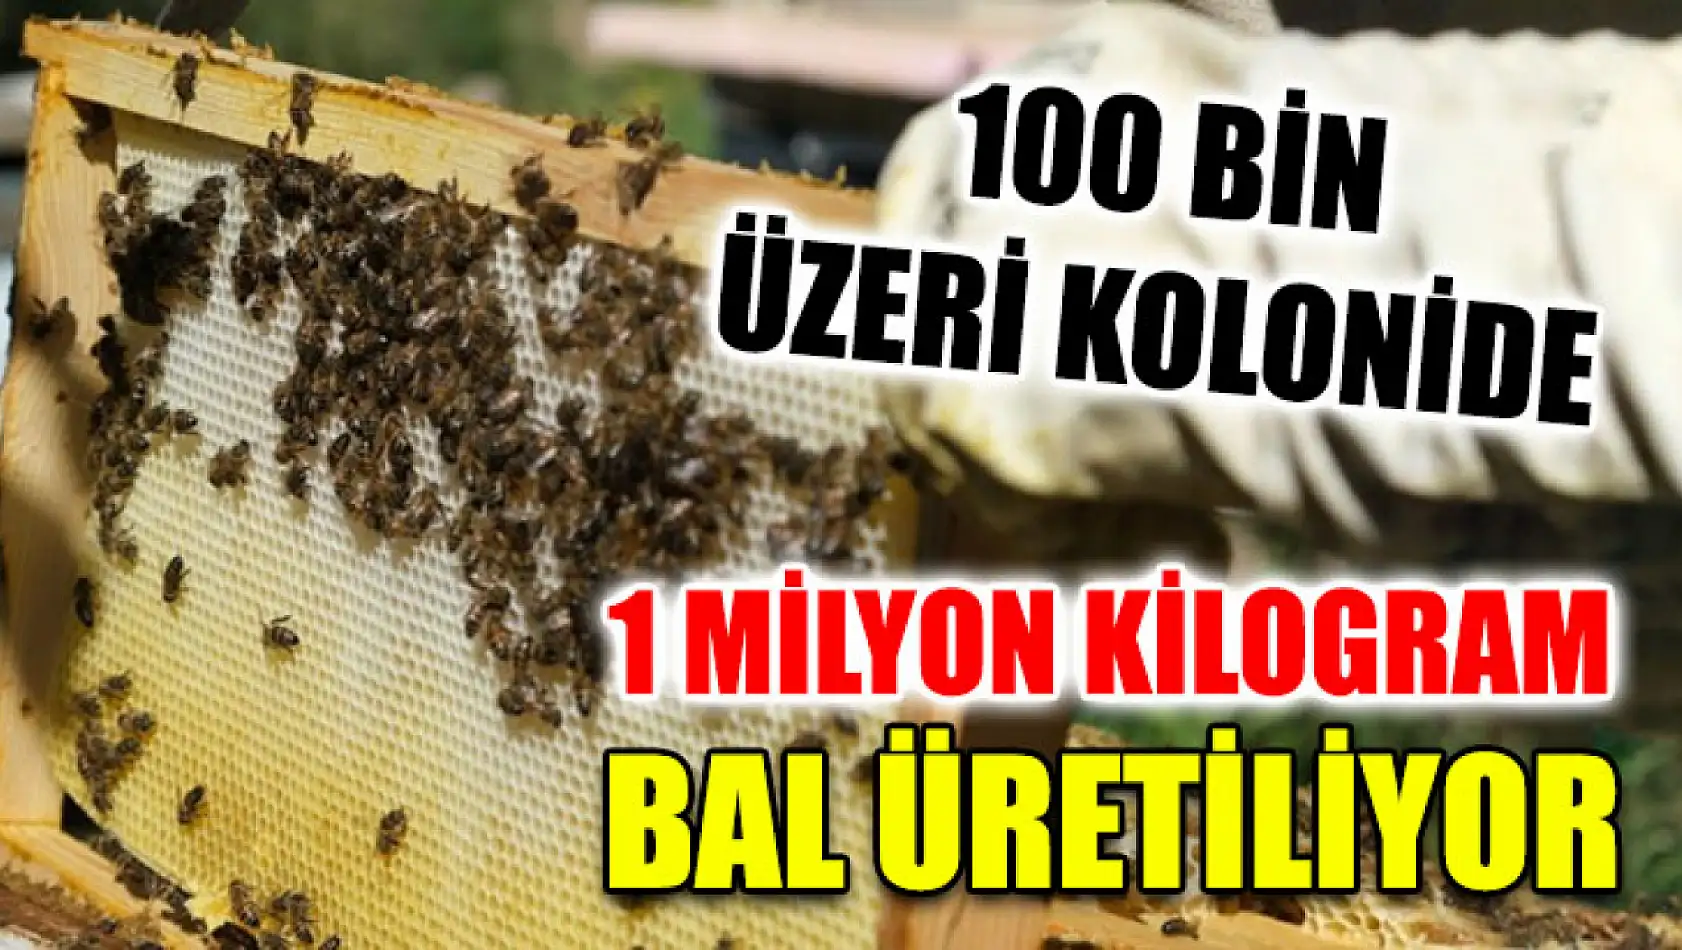 100 Bin Üzeri Kolonide 1 Milyon Kilogram Bal Üretiliyor